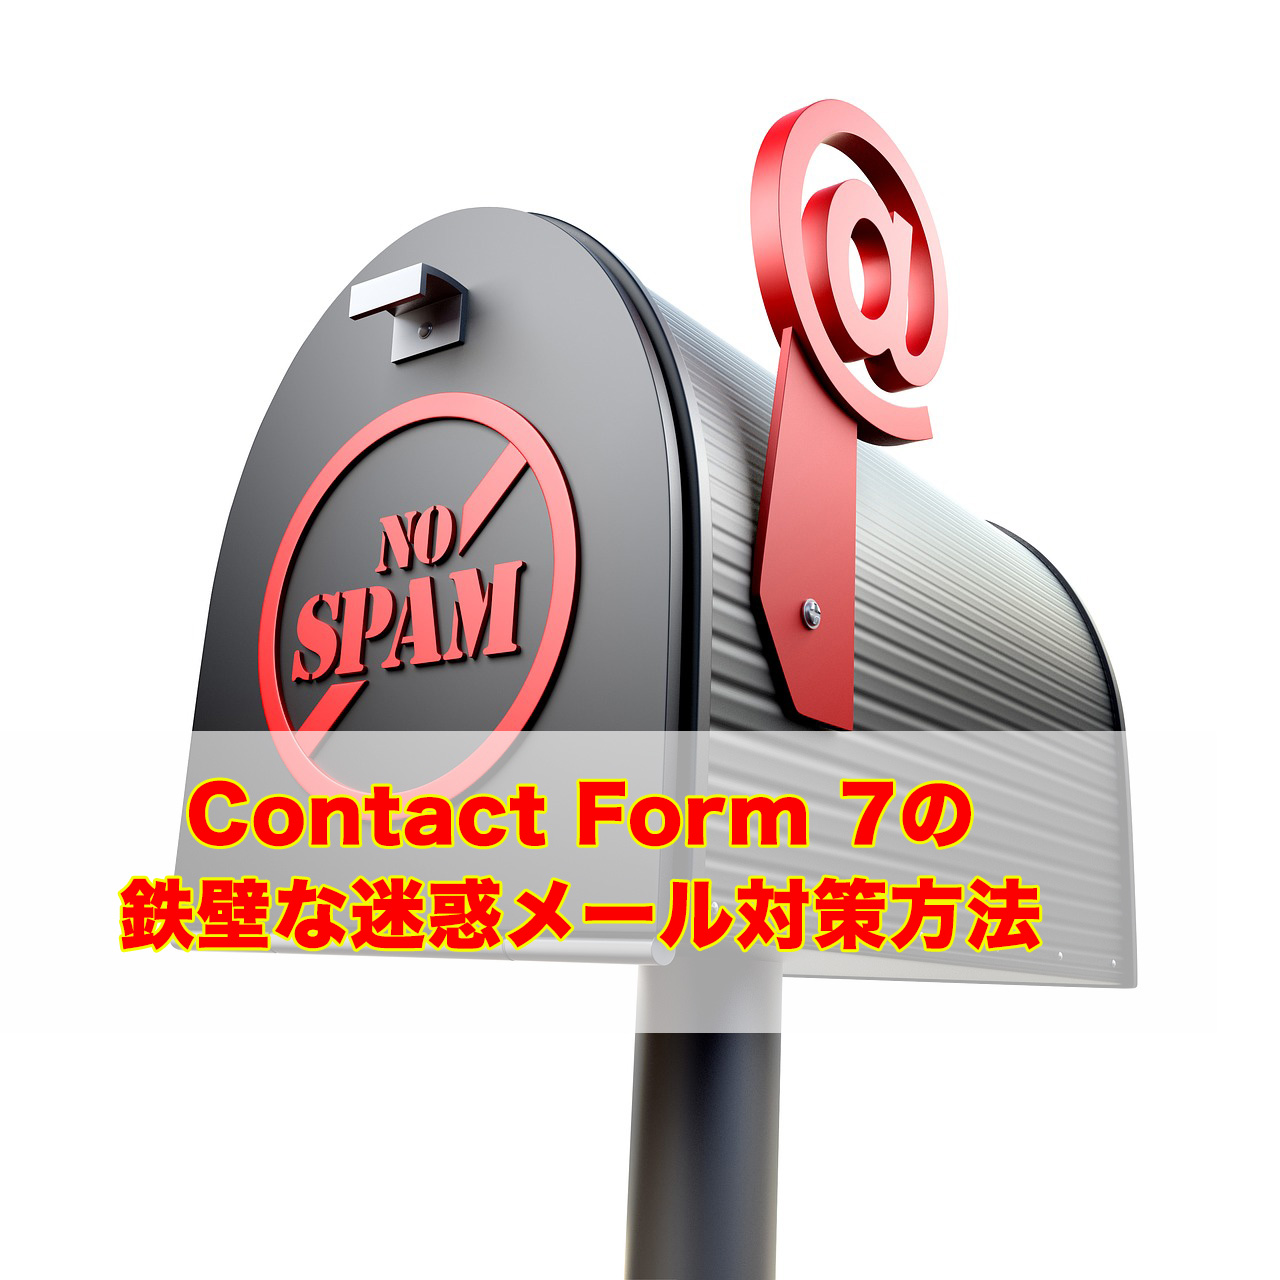 Contact Form 7の迷惑メール対策に鉄壁な対策方法